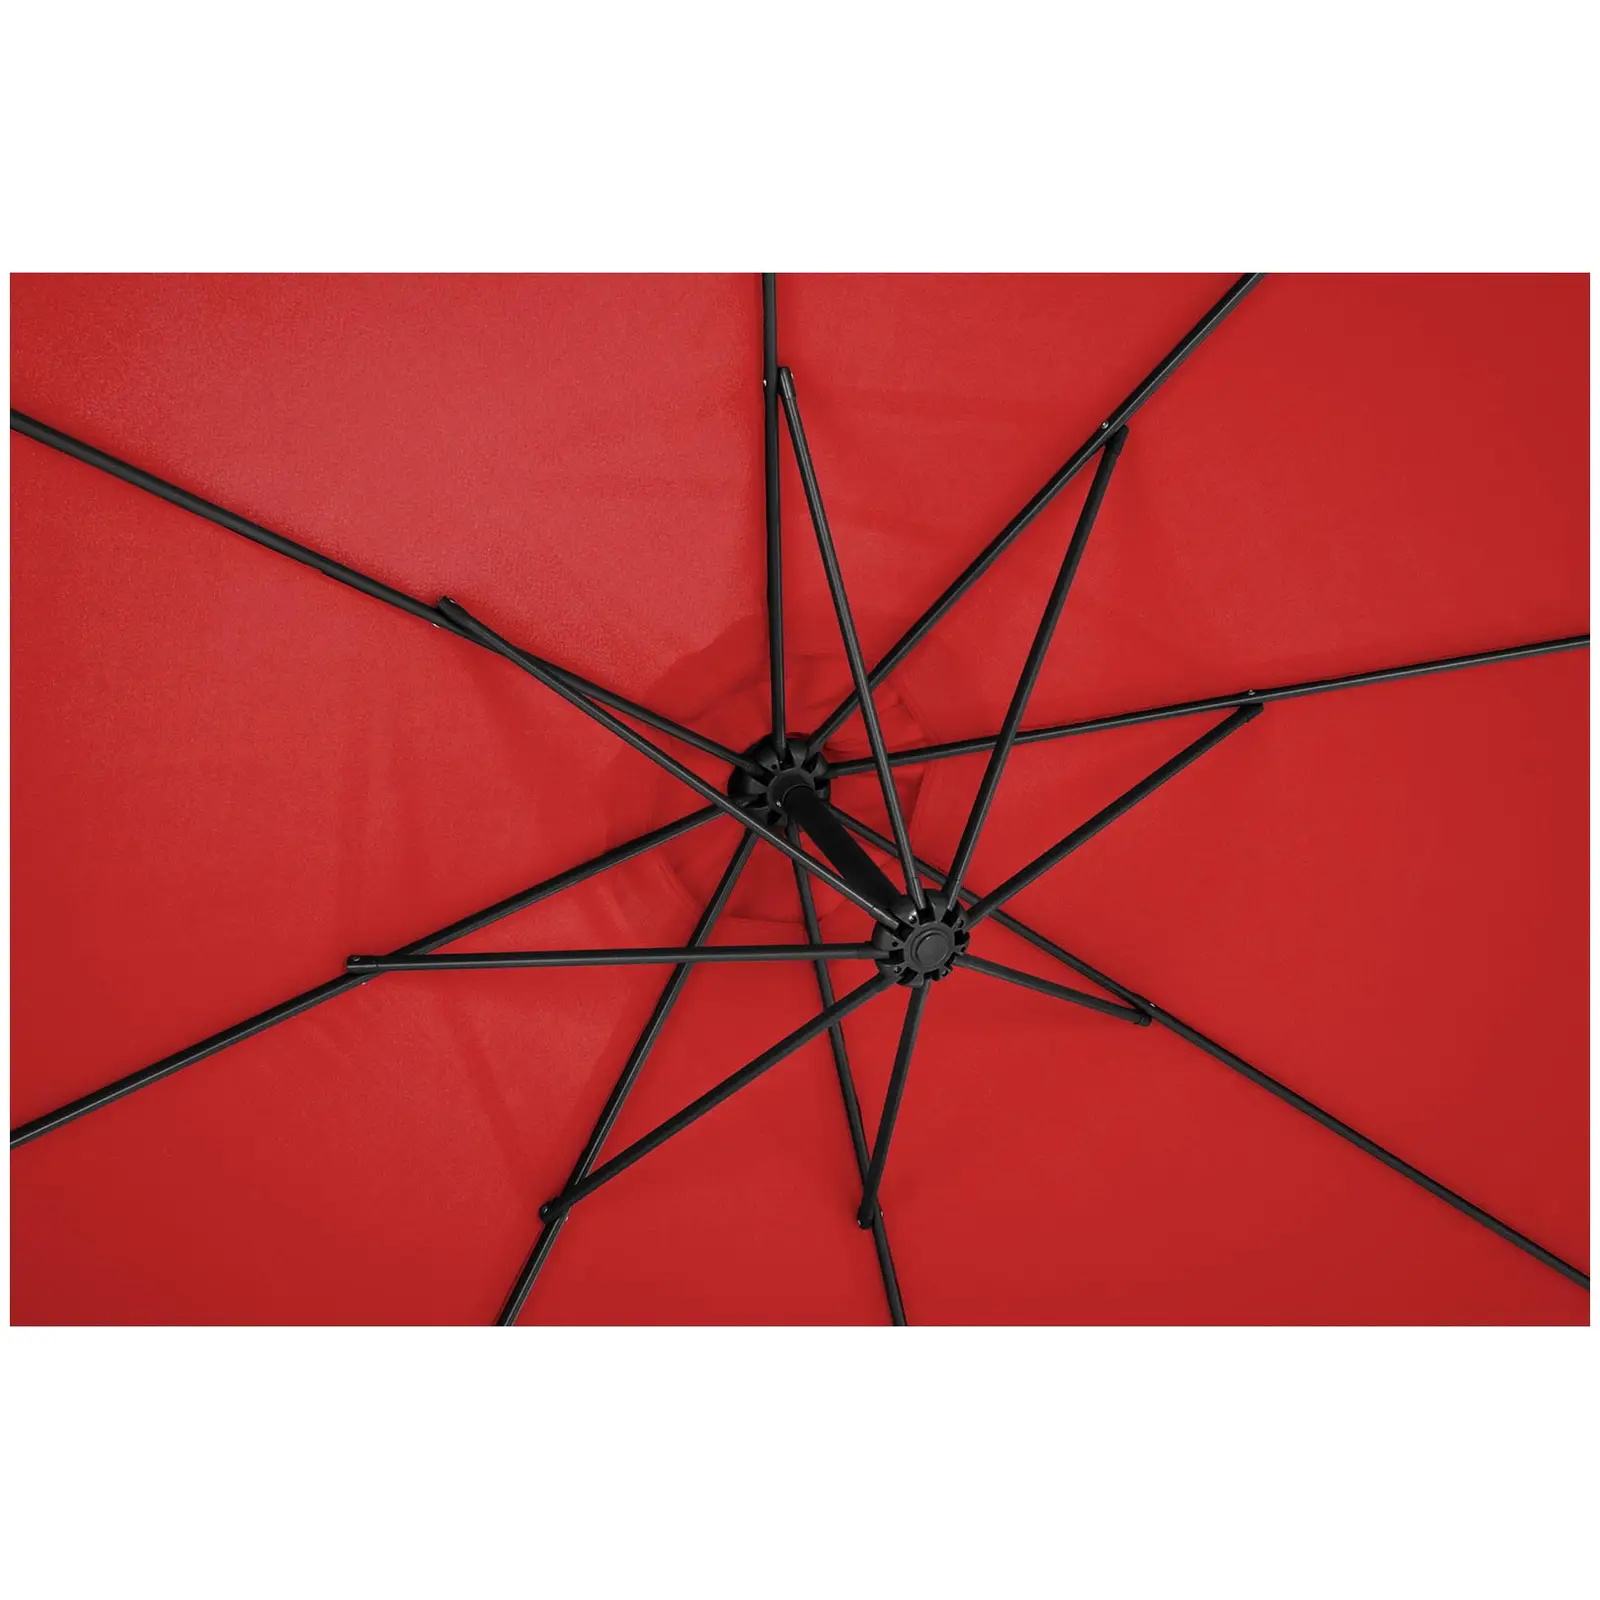 Brugt Hængeparasol - rød - rund - 300 cm i diameter